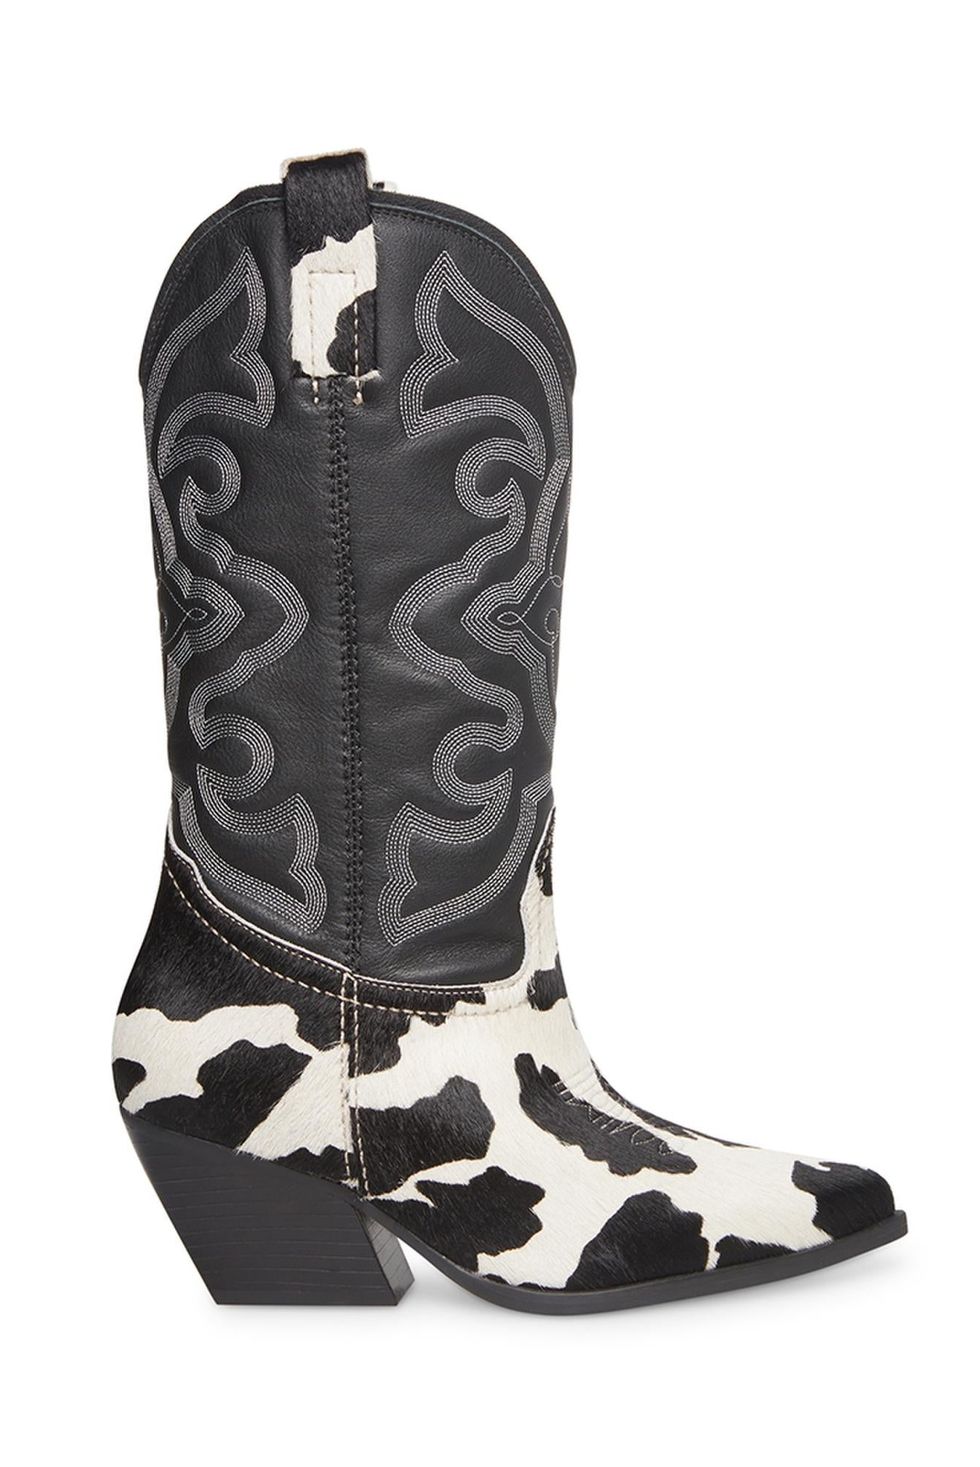 West Black / White Cowboy Boots 